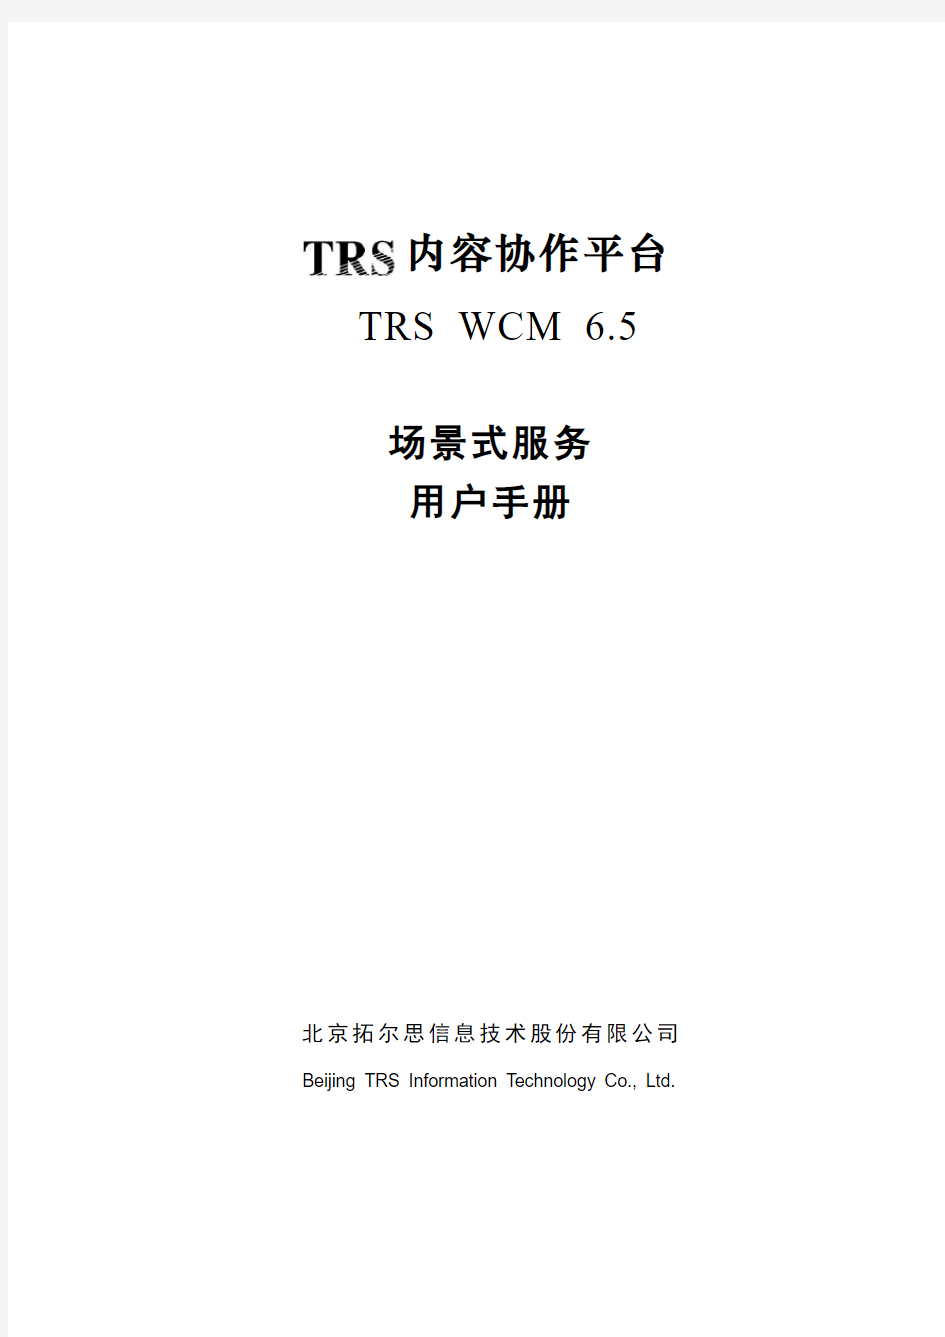 TRSWCM6.5场景式服务用户手册